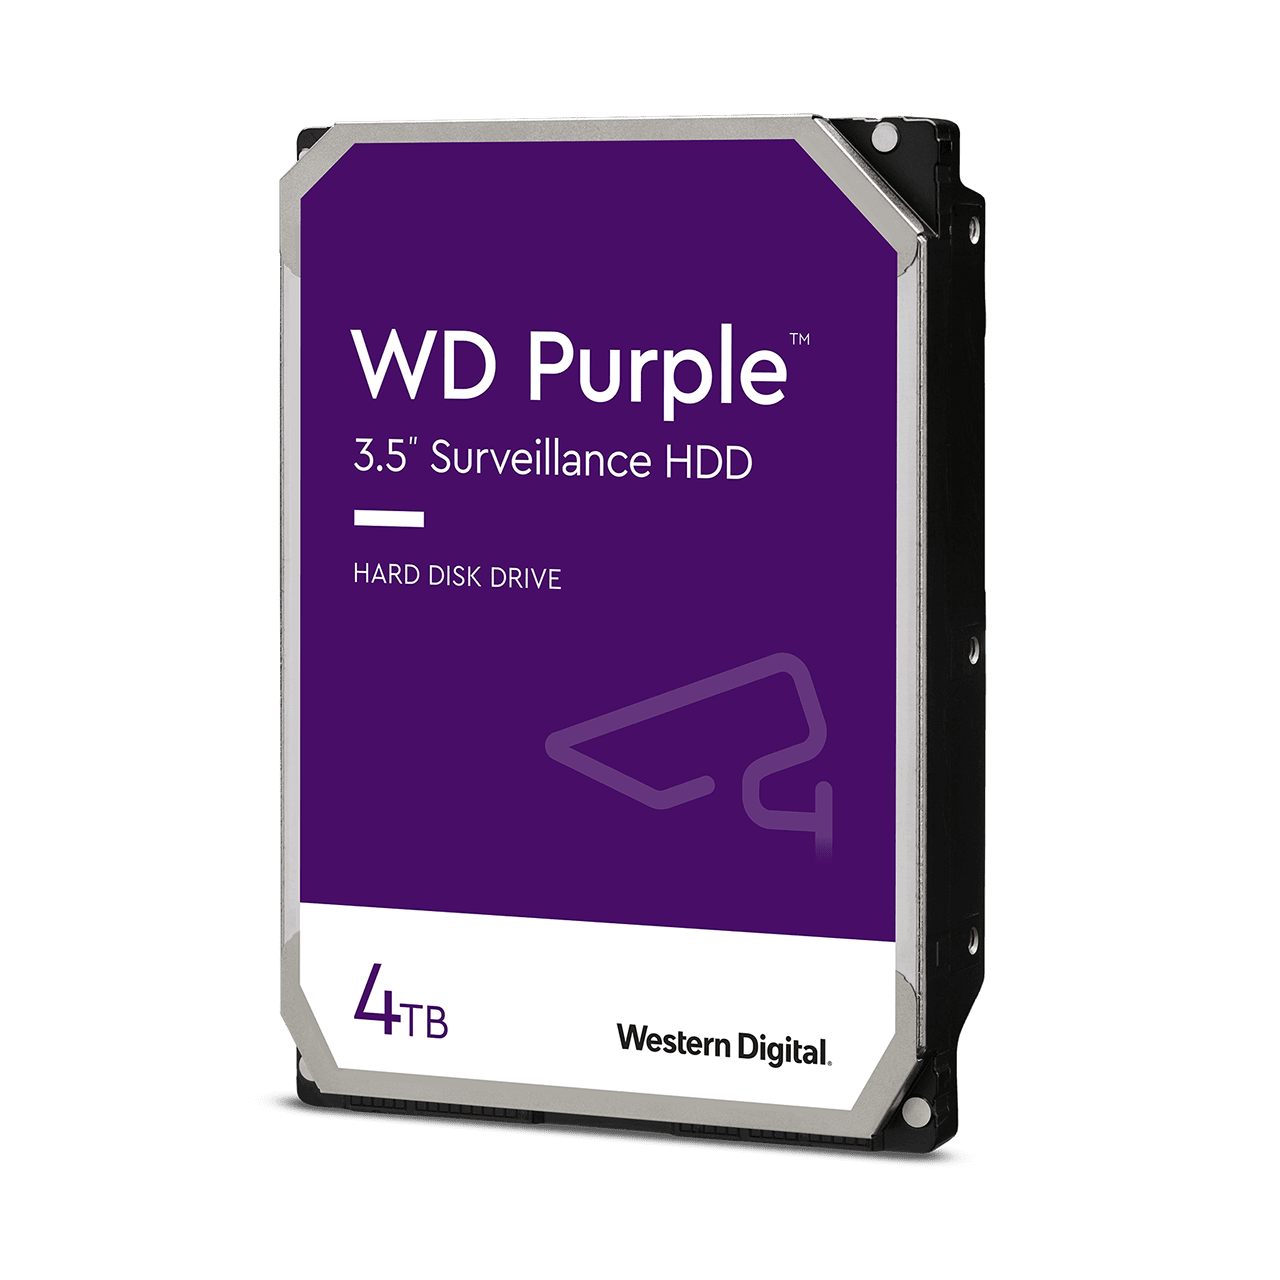 wd-purple-surveillance-hard-drive-4tb.png.thumb.1280.1280